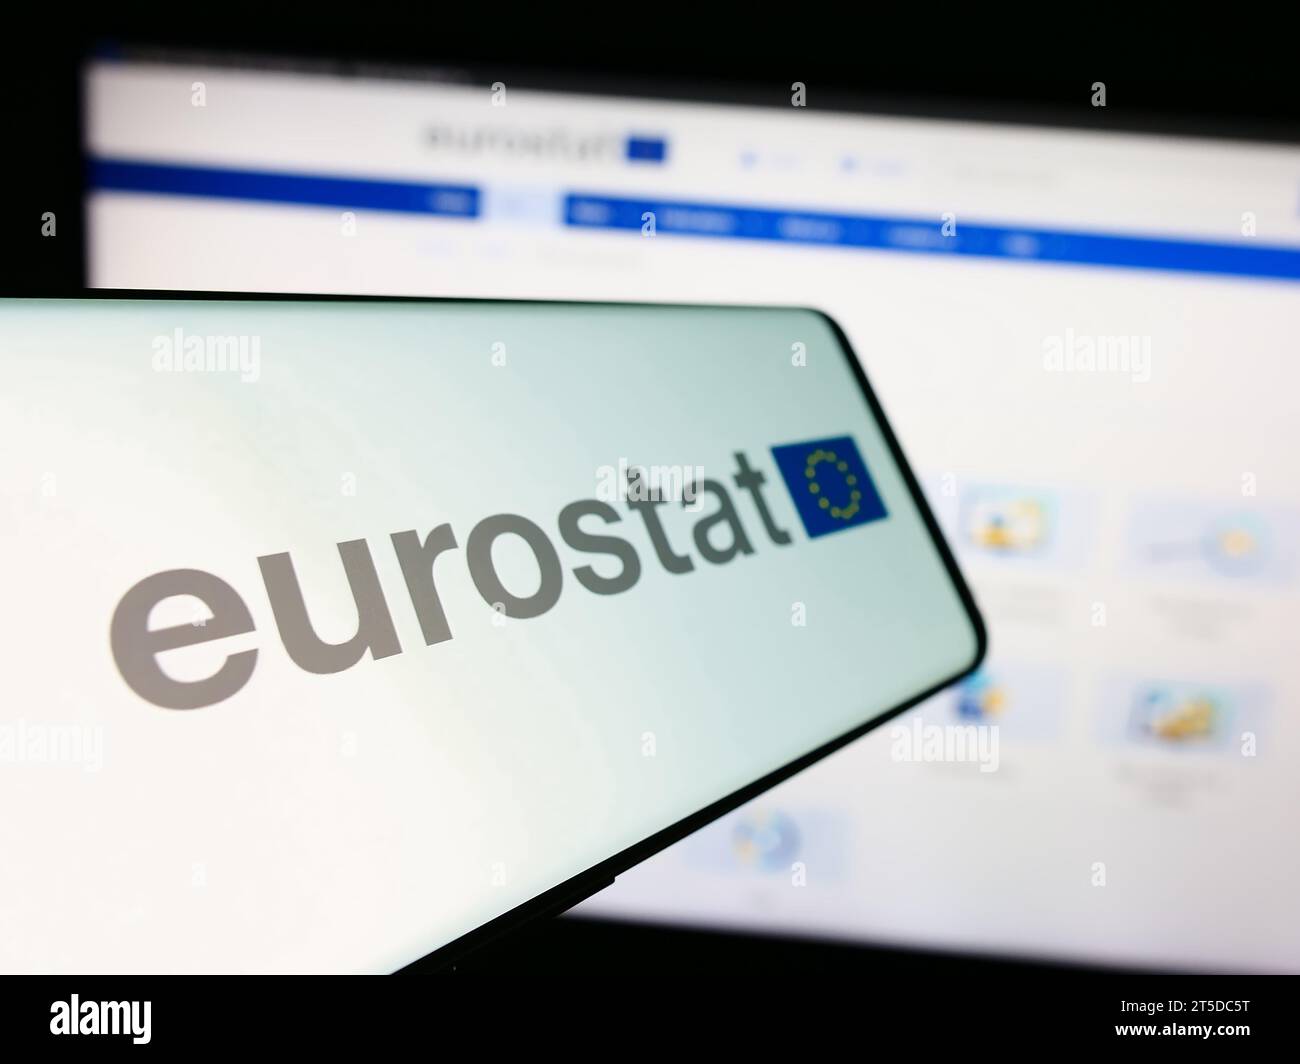 Telefono cellulare con logo dell'Istituto europeo di statistica Eurostat davanti al sito web delle imprese. Mettere a fuoco il display centrale sinistro del telefono. Foto Stock